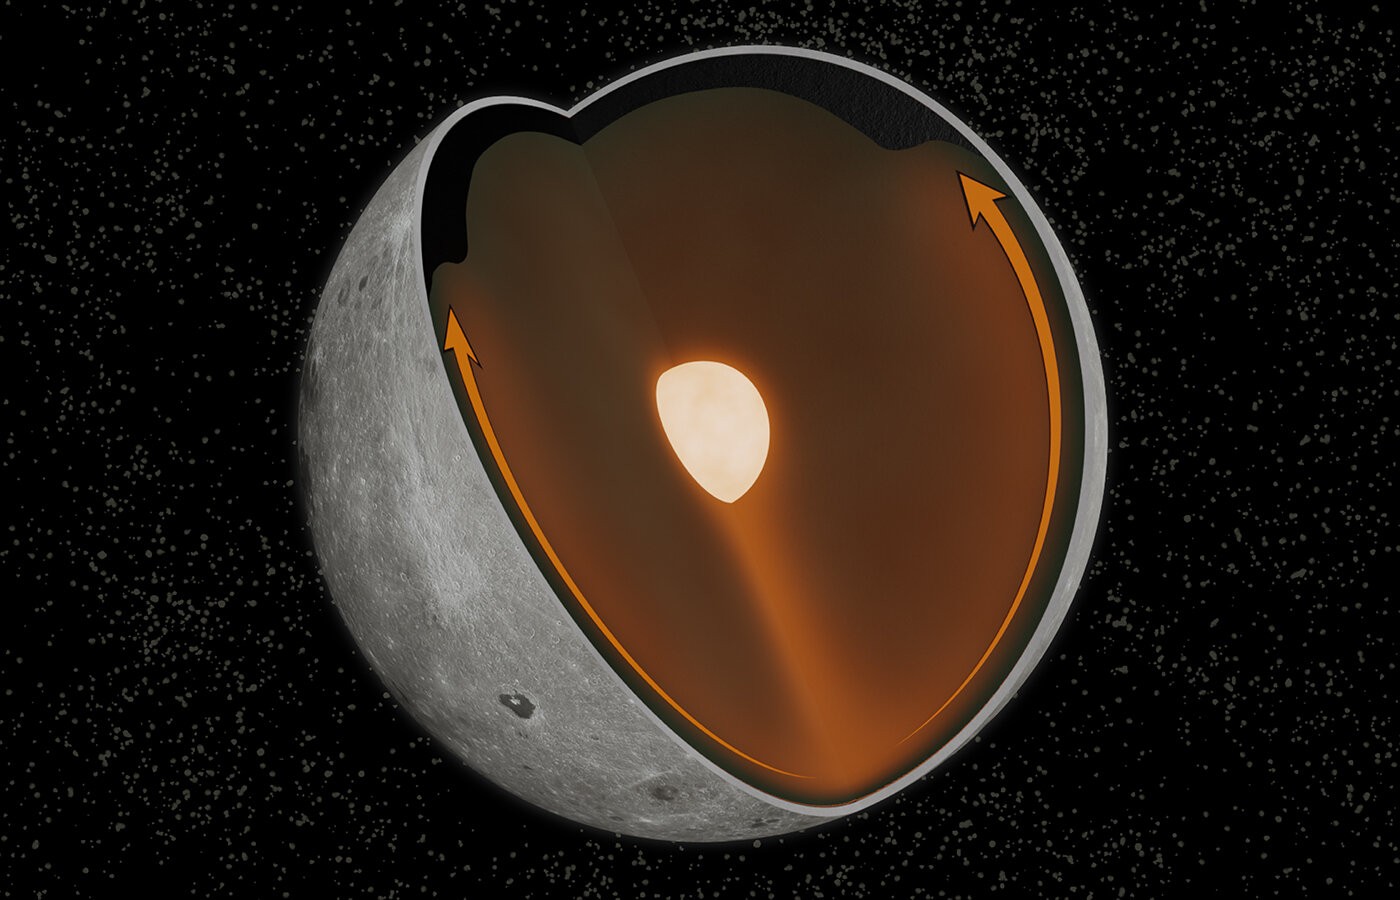 Estudo revela que antiga colisão no polo sul da Lua mudou os padrões de convecção no manto lunar, causando diferenças entre as faces do satélite natural (Foto: Matt Jones)